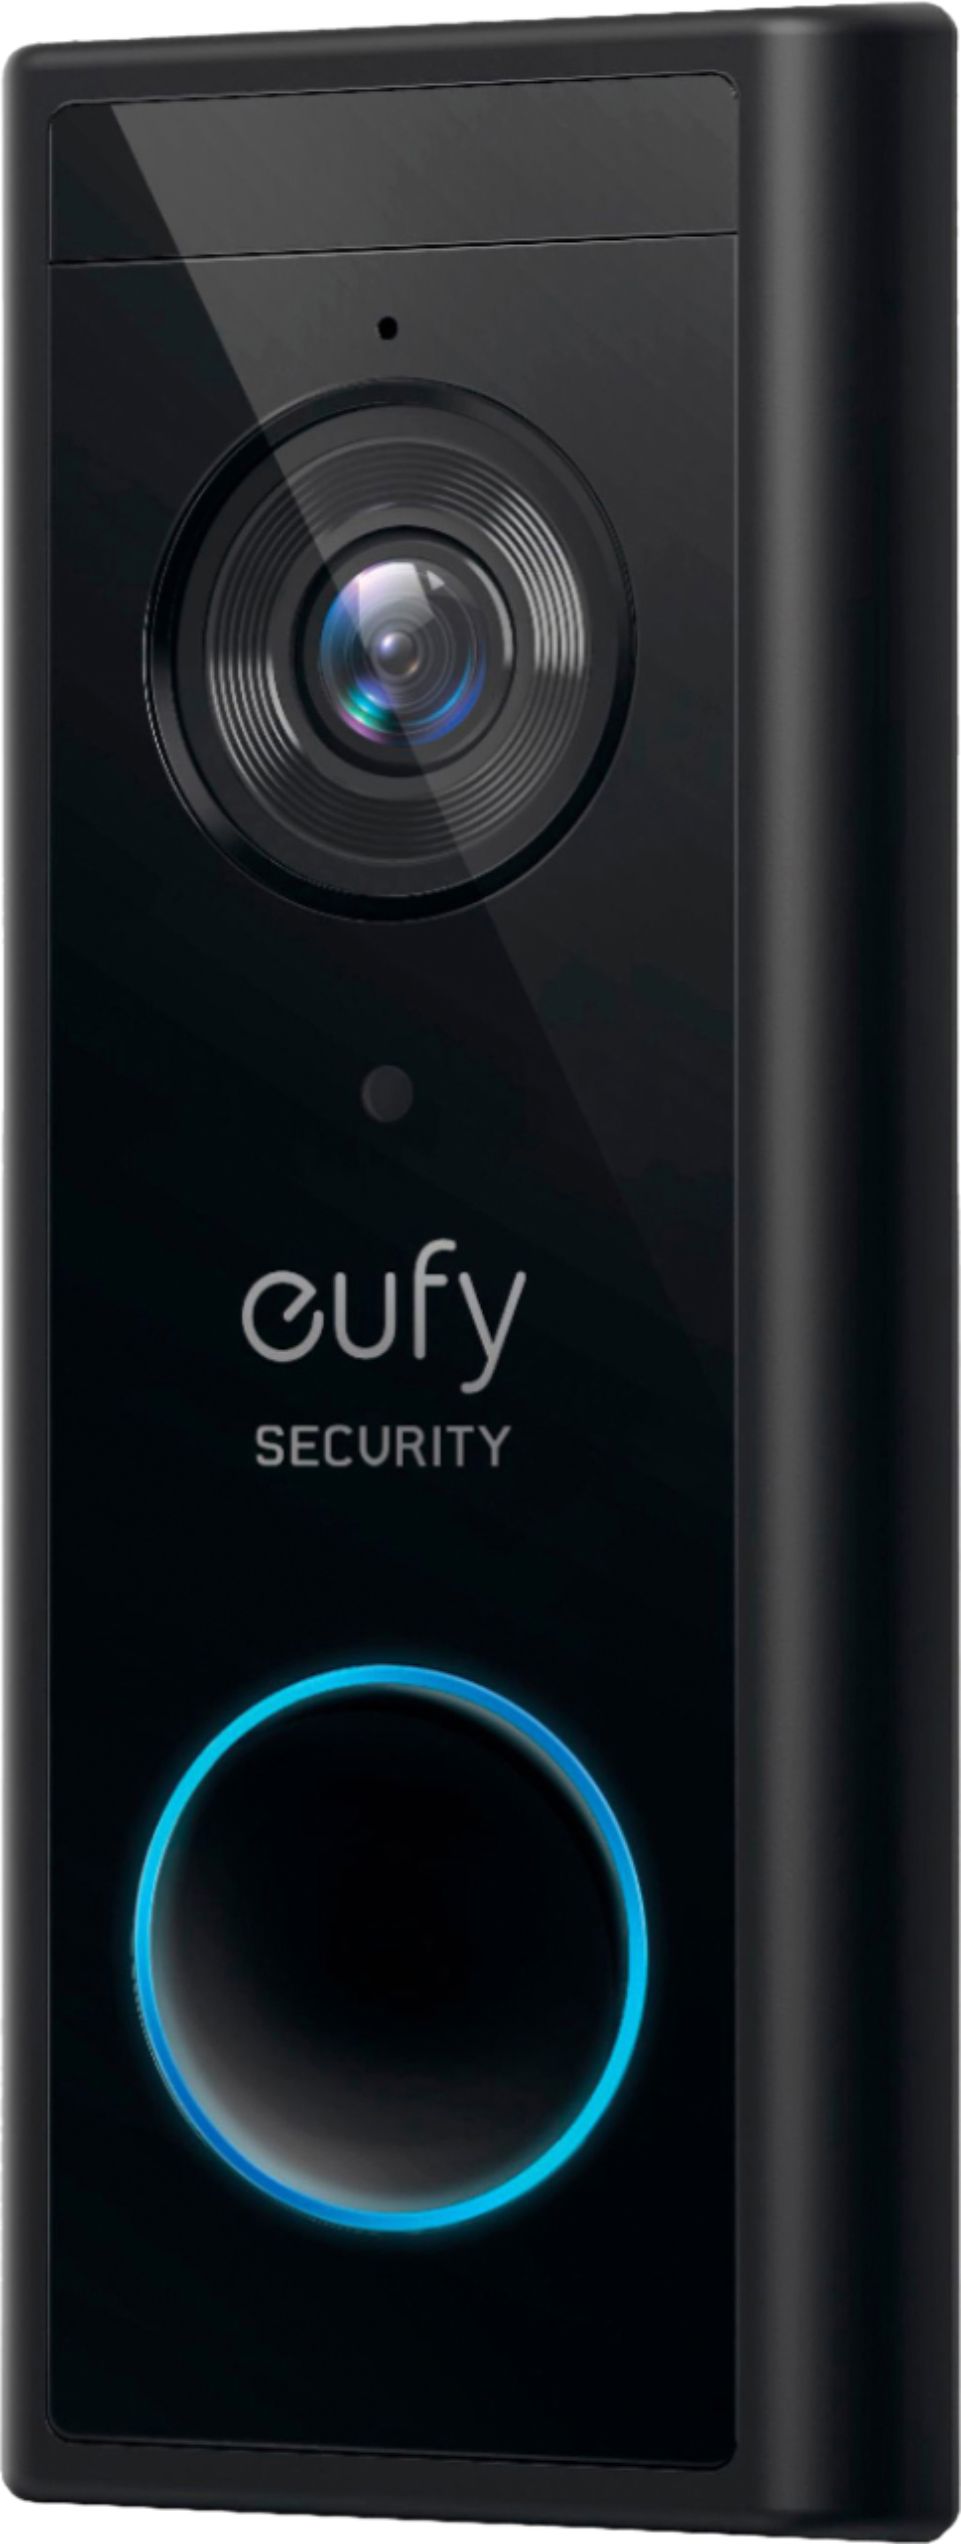 eufy Security - Smart Wi-Fi Add On Video Doorbell 2K - Black